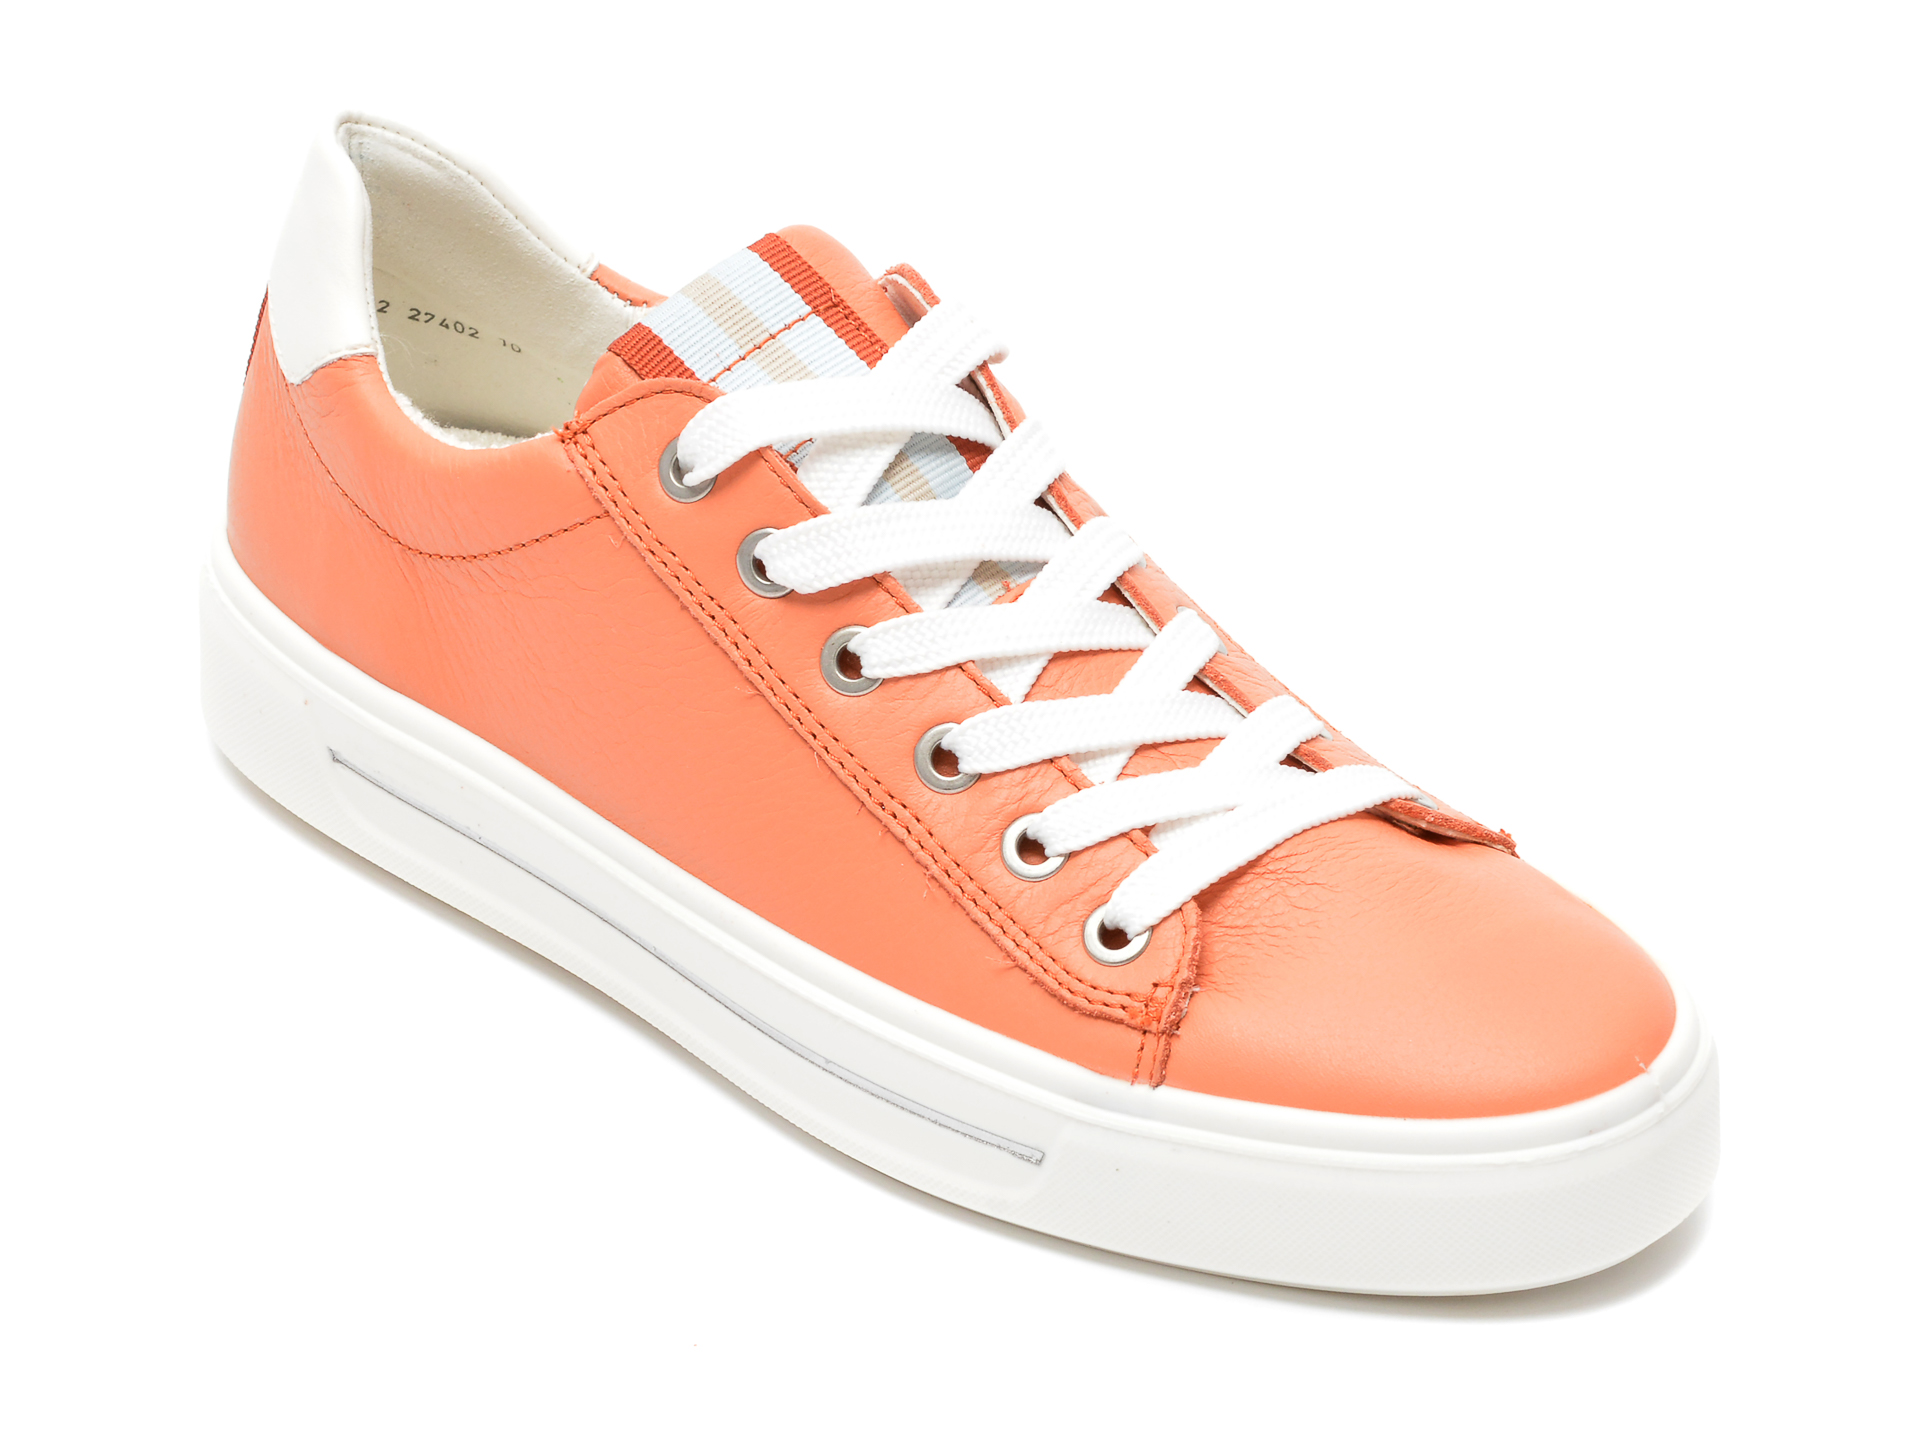 Pantofi sport ARA portocalii, 27402, din piele naturala /femei/pantofi